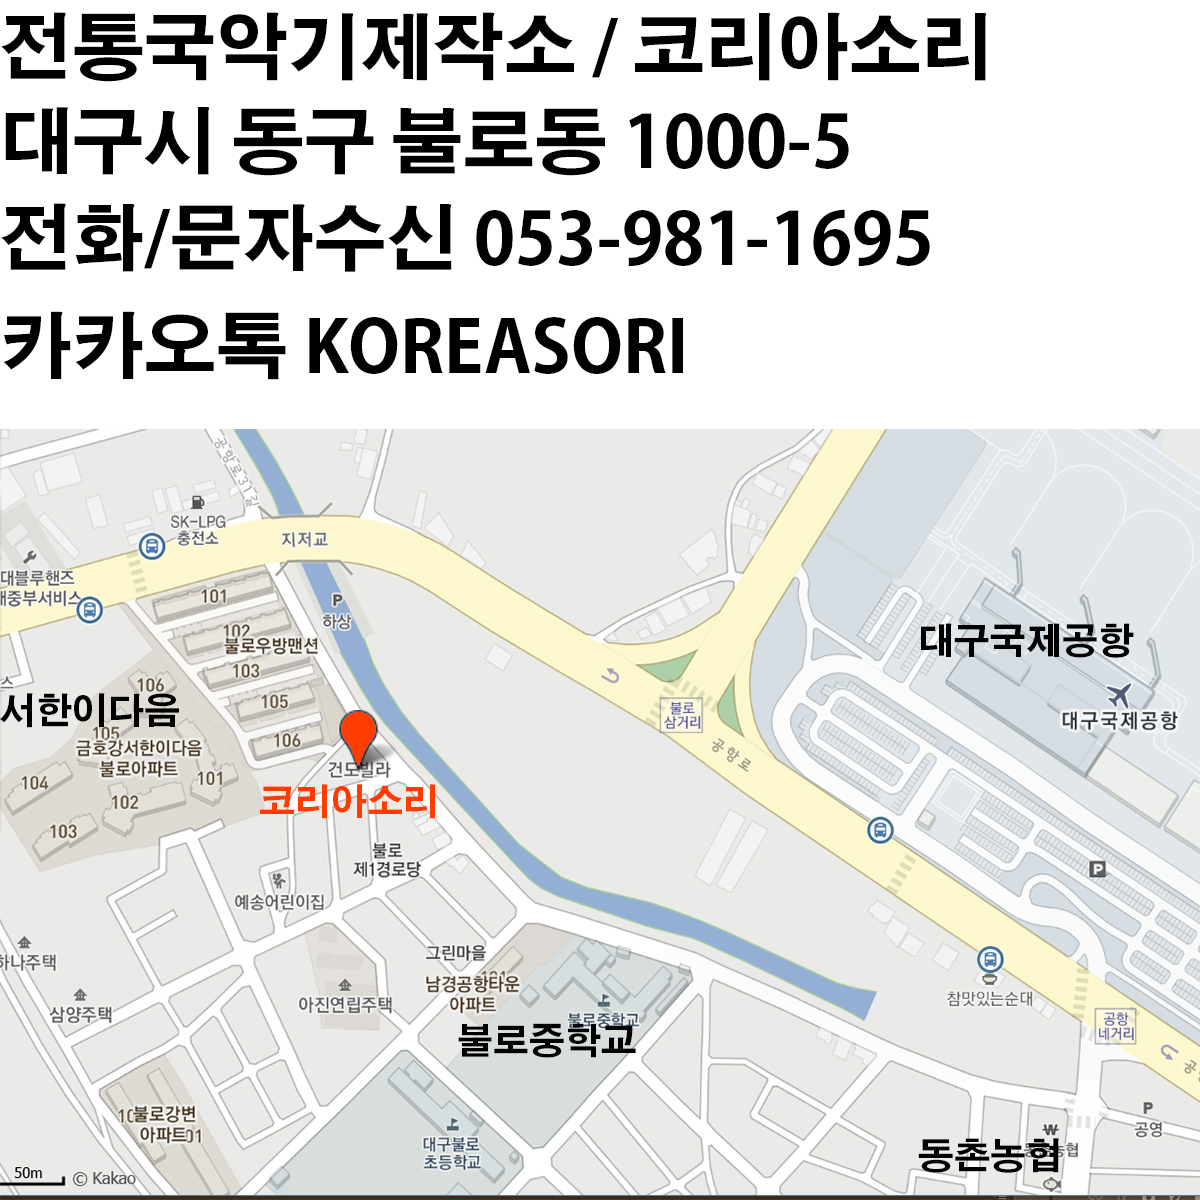 초등3.4년용 박달공이 대나무 장구궁채 장구채 / KSH-DJA113A